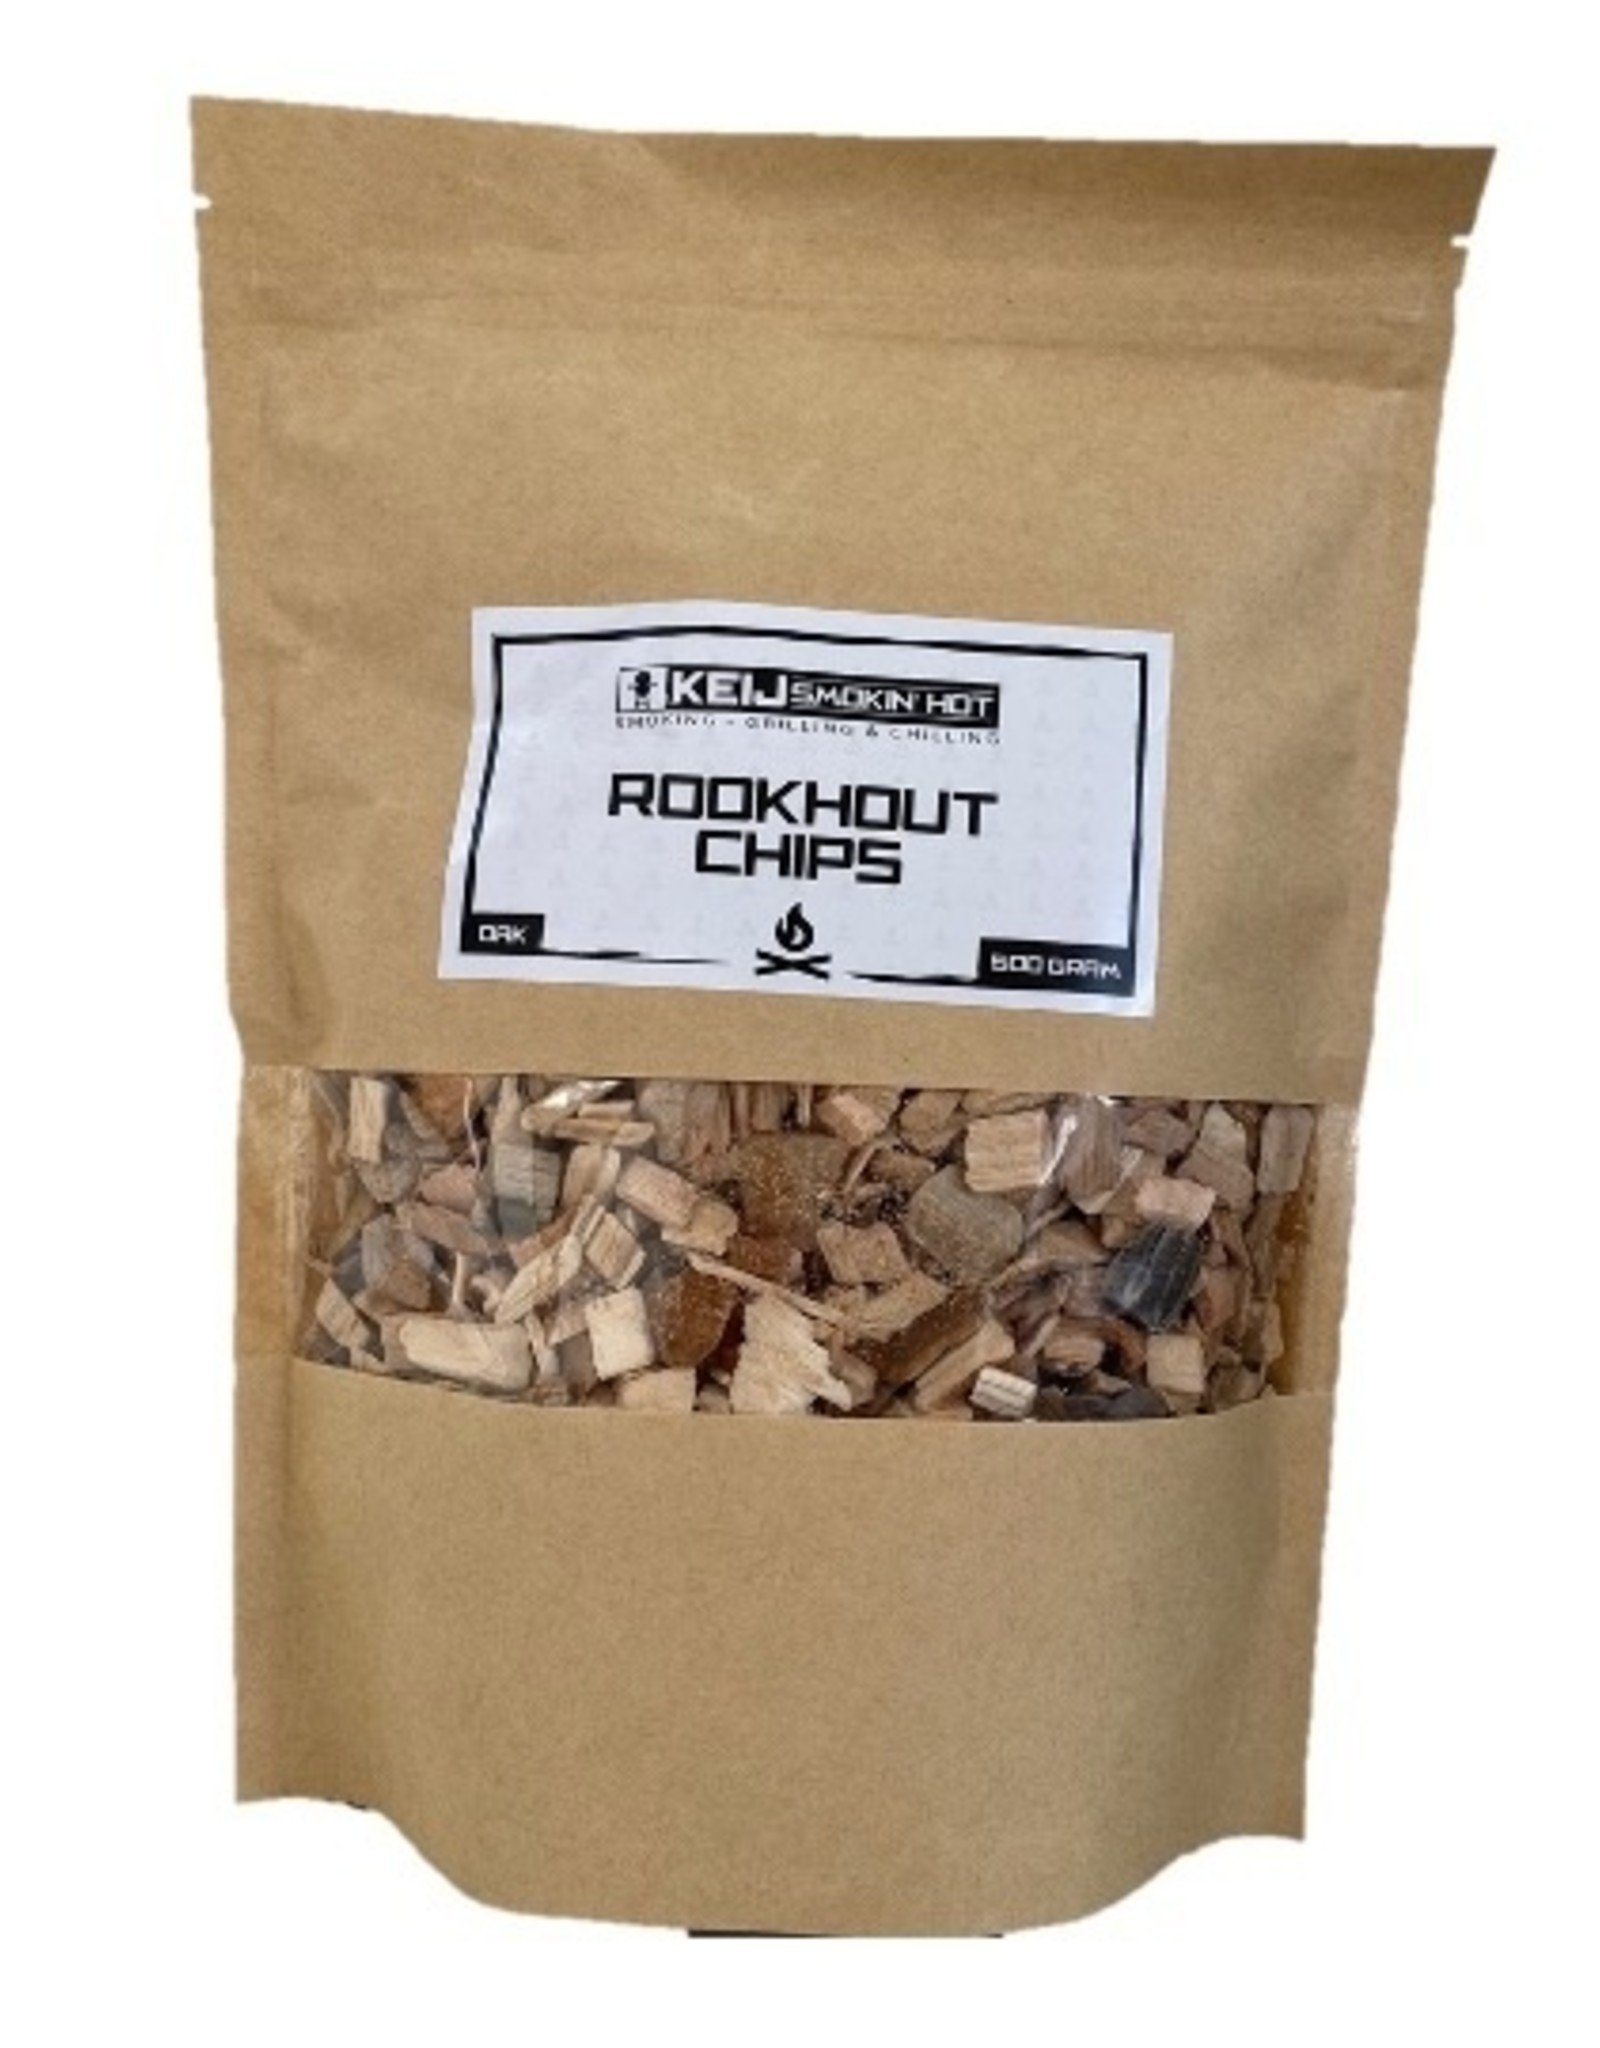 Keij Smokin' Hot Rookhout Chips Oak - 500 gram